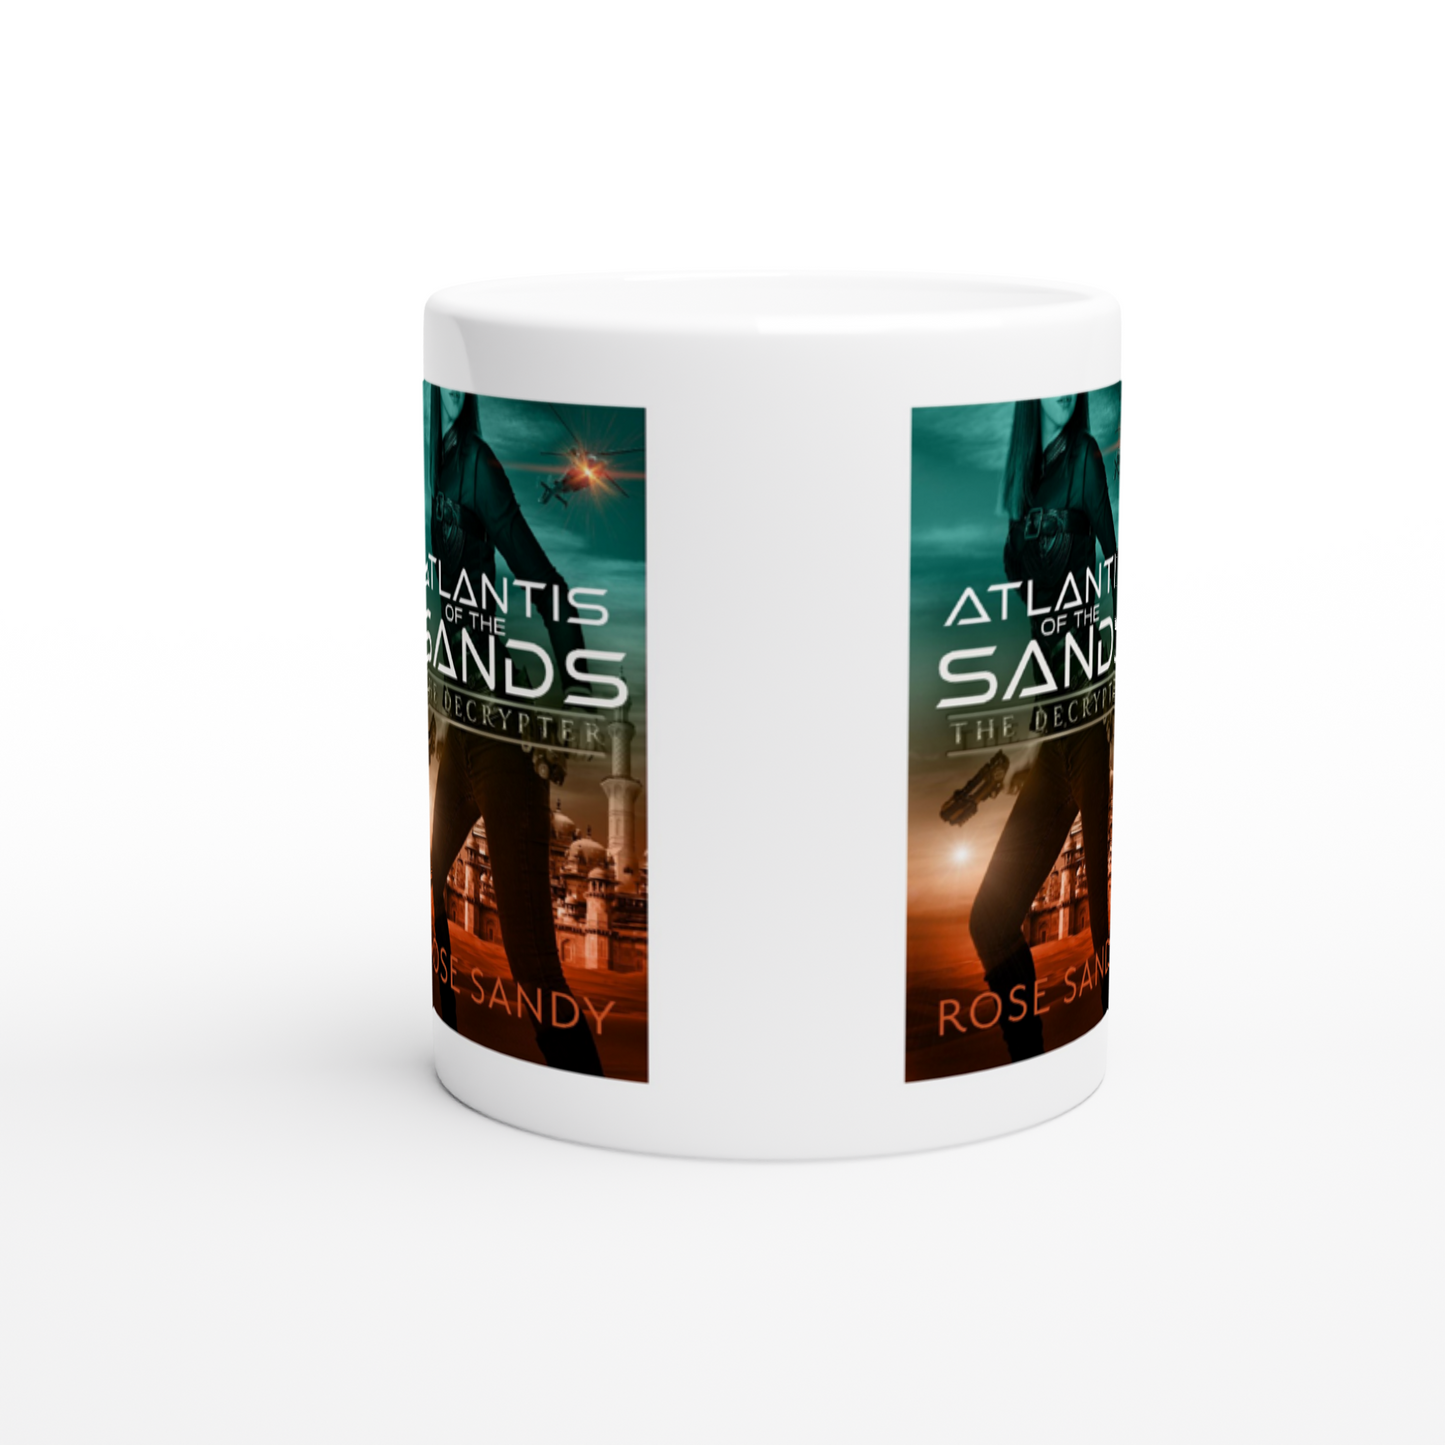 Atlantis of the Sands White 11oz Ceramic Mug